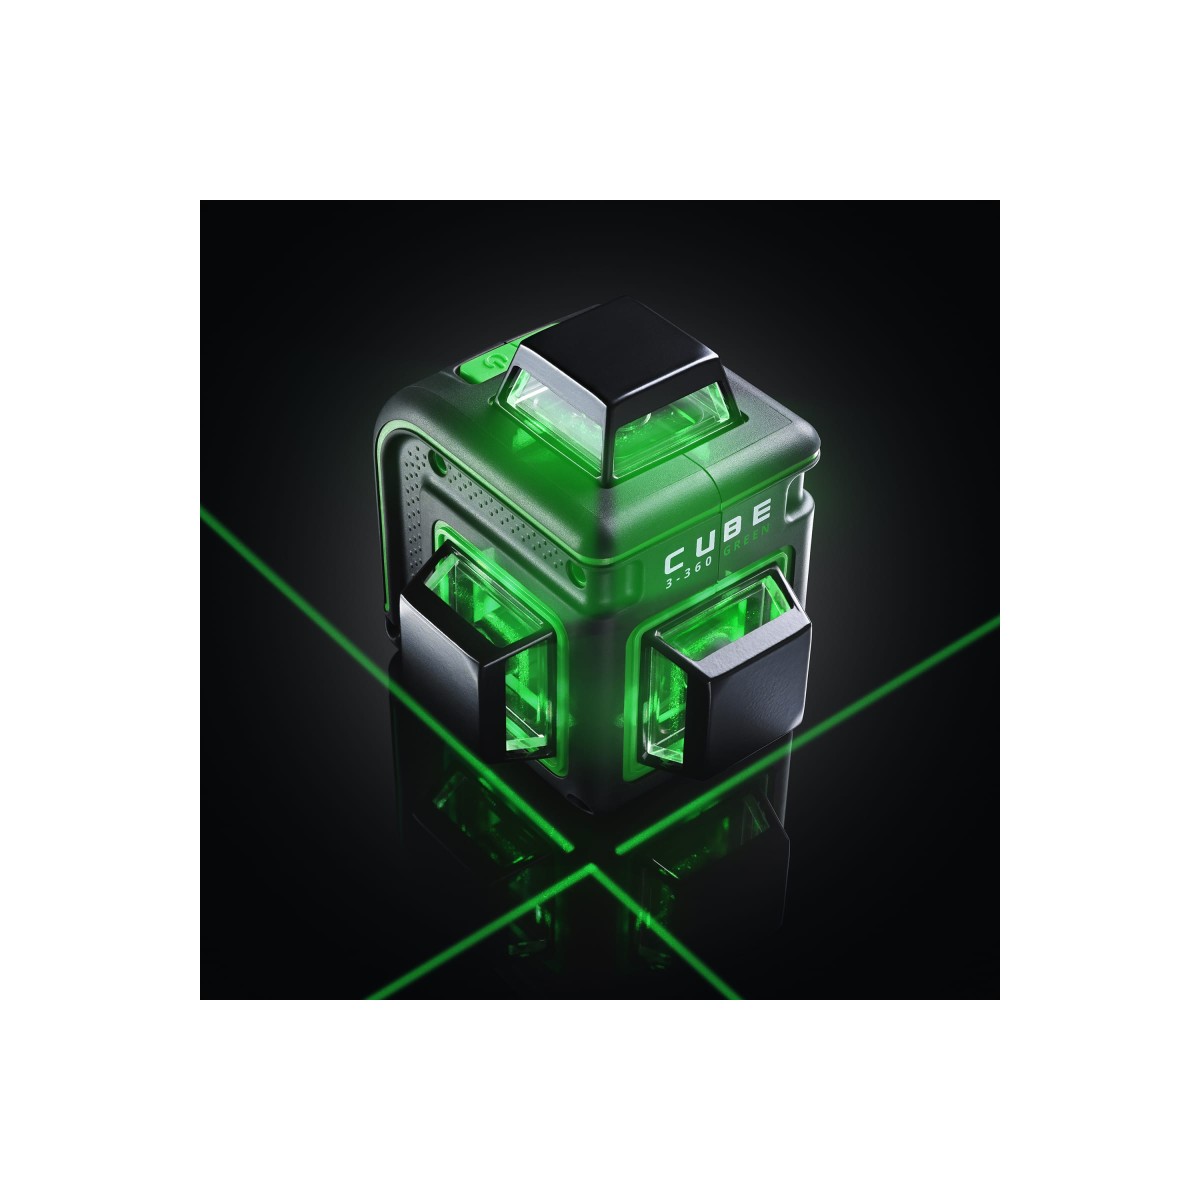 Лазерный уровень cube 360 green. Ada Cube 3-360 Green. Лазерный уровень ada Cube 3-360 Basic Edition. Ada Cube 2-360 Green. Лазерный уровень Cube 3 сломанный.